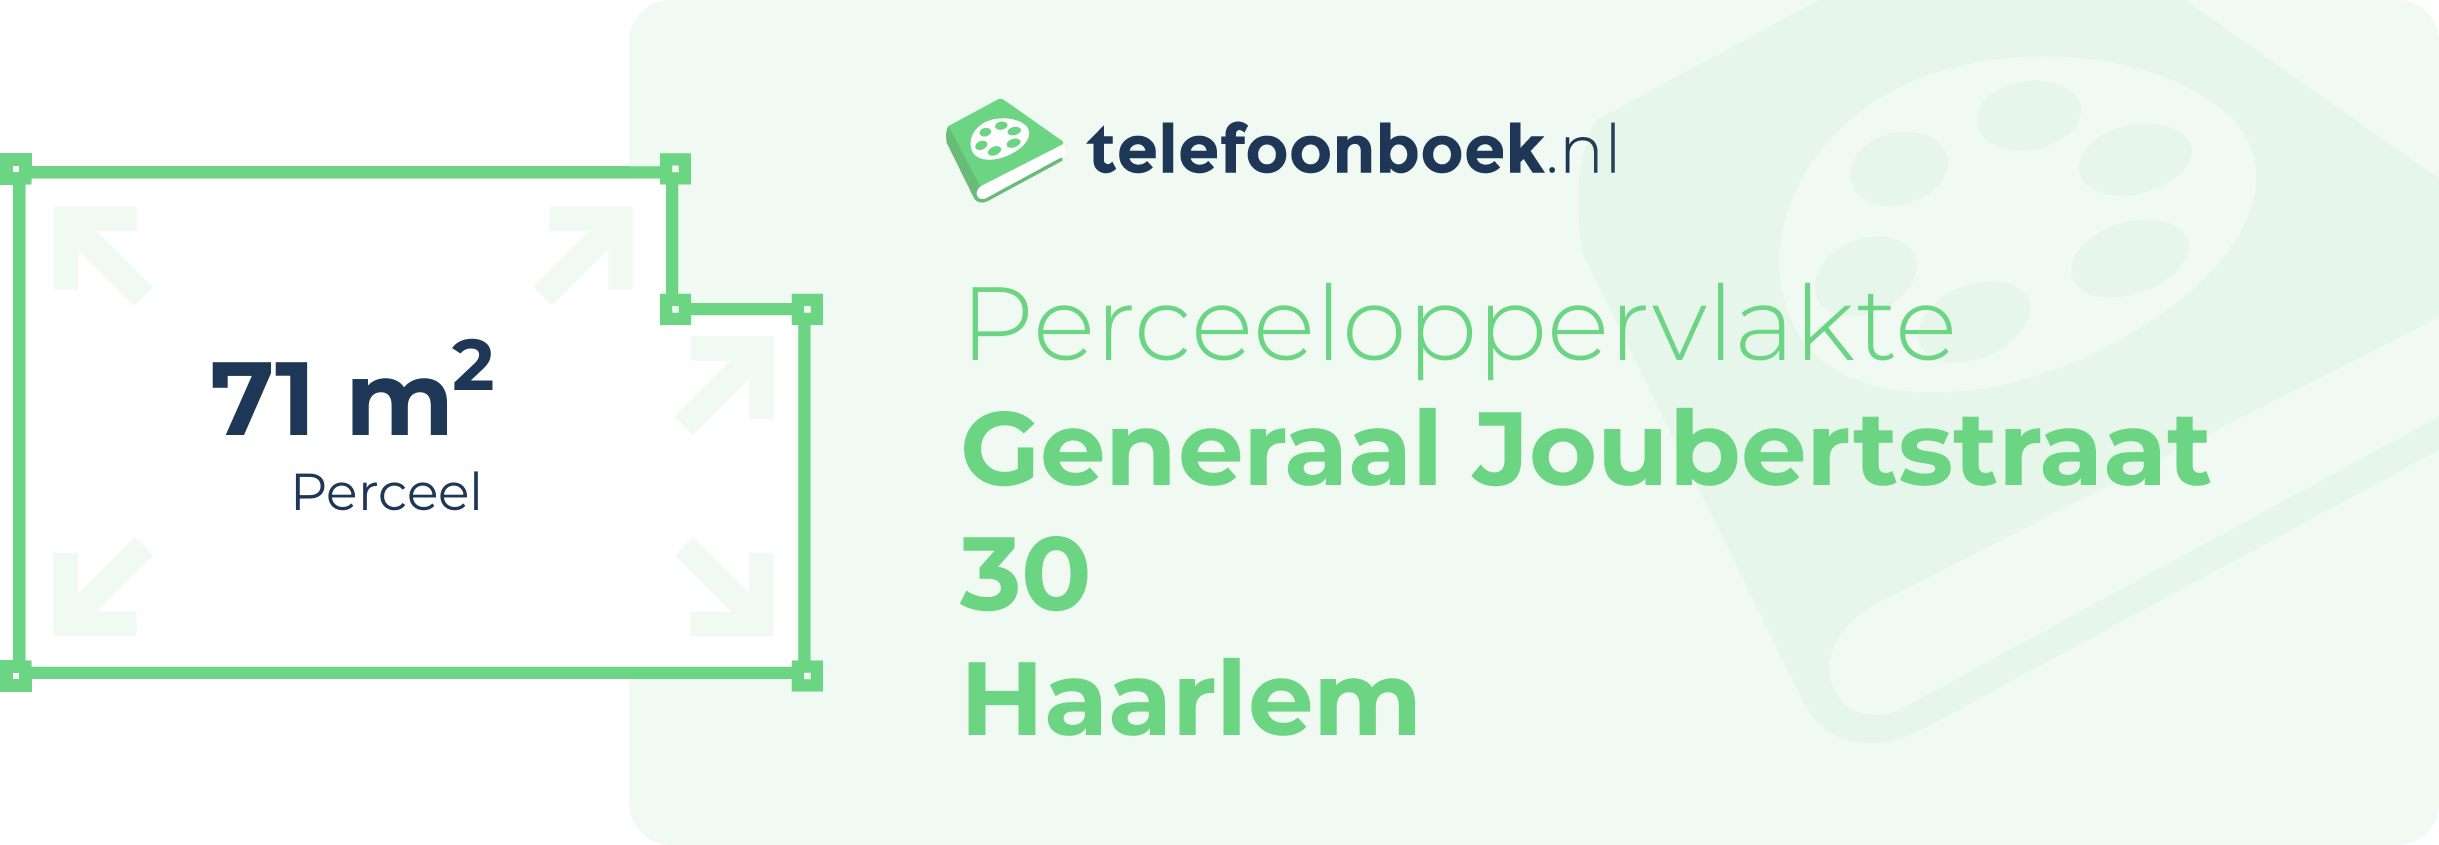 Perceeloppervlakte Generaal Joubertstraat 30 Haarlem